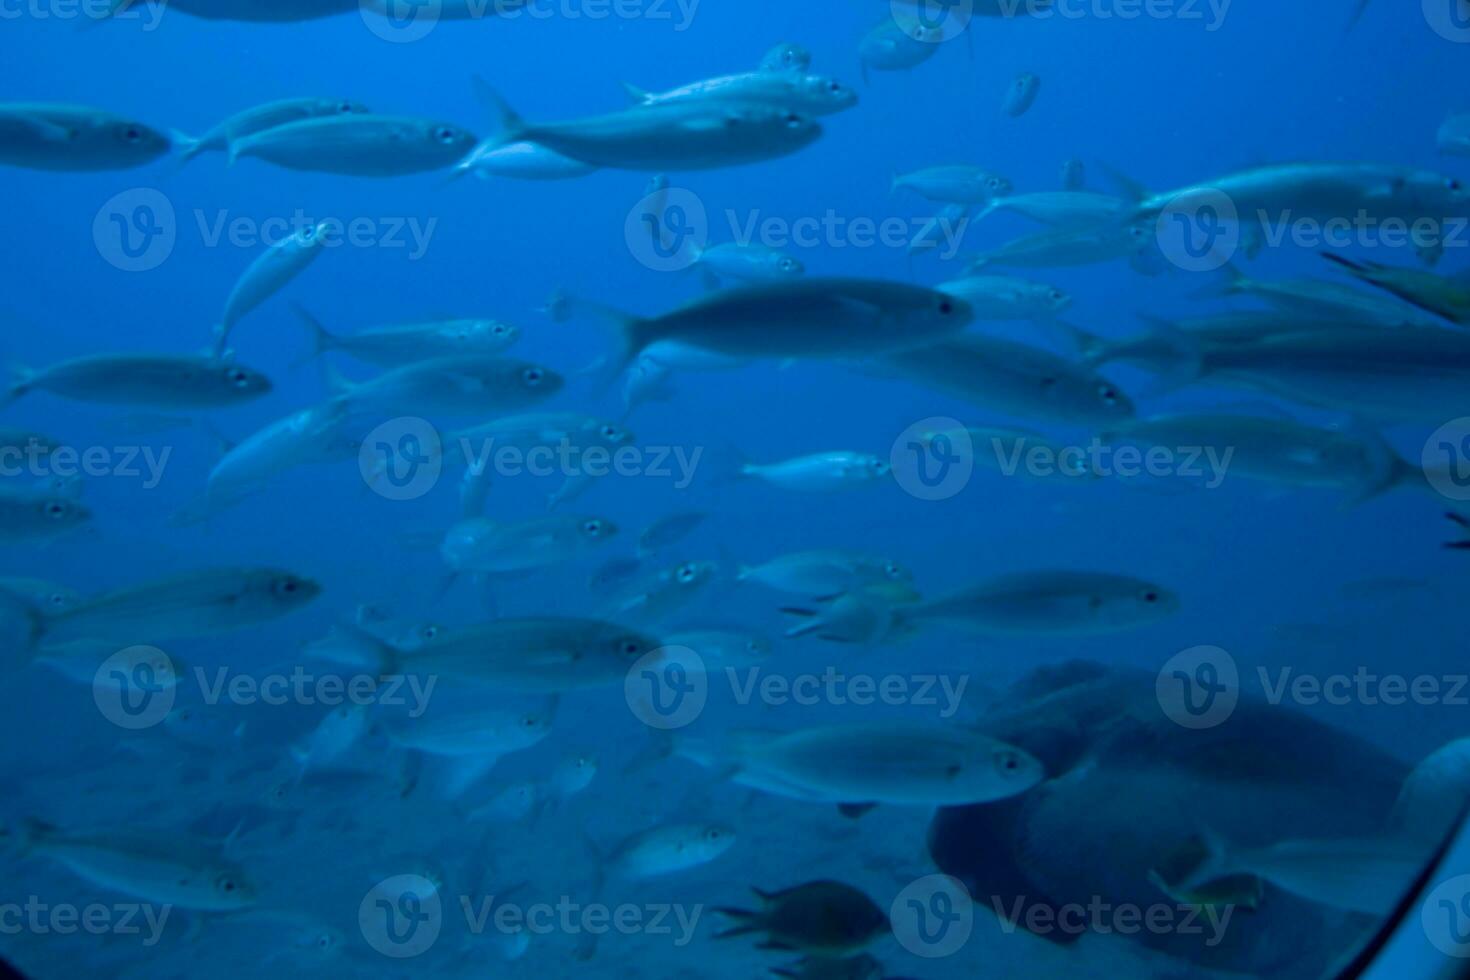 stil kalmte onderzees wereld met vis leven in de atlantic oceaan foto